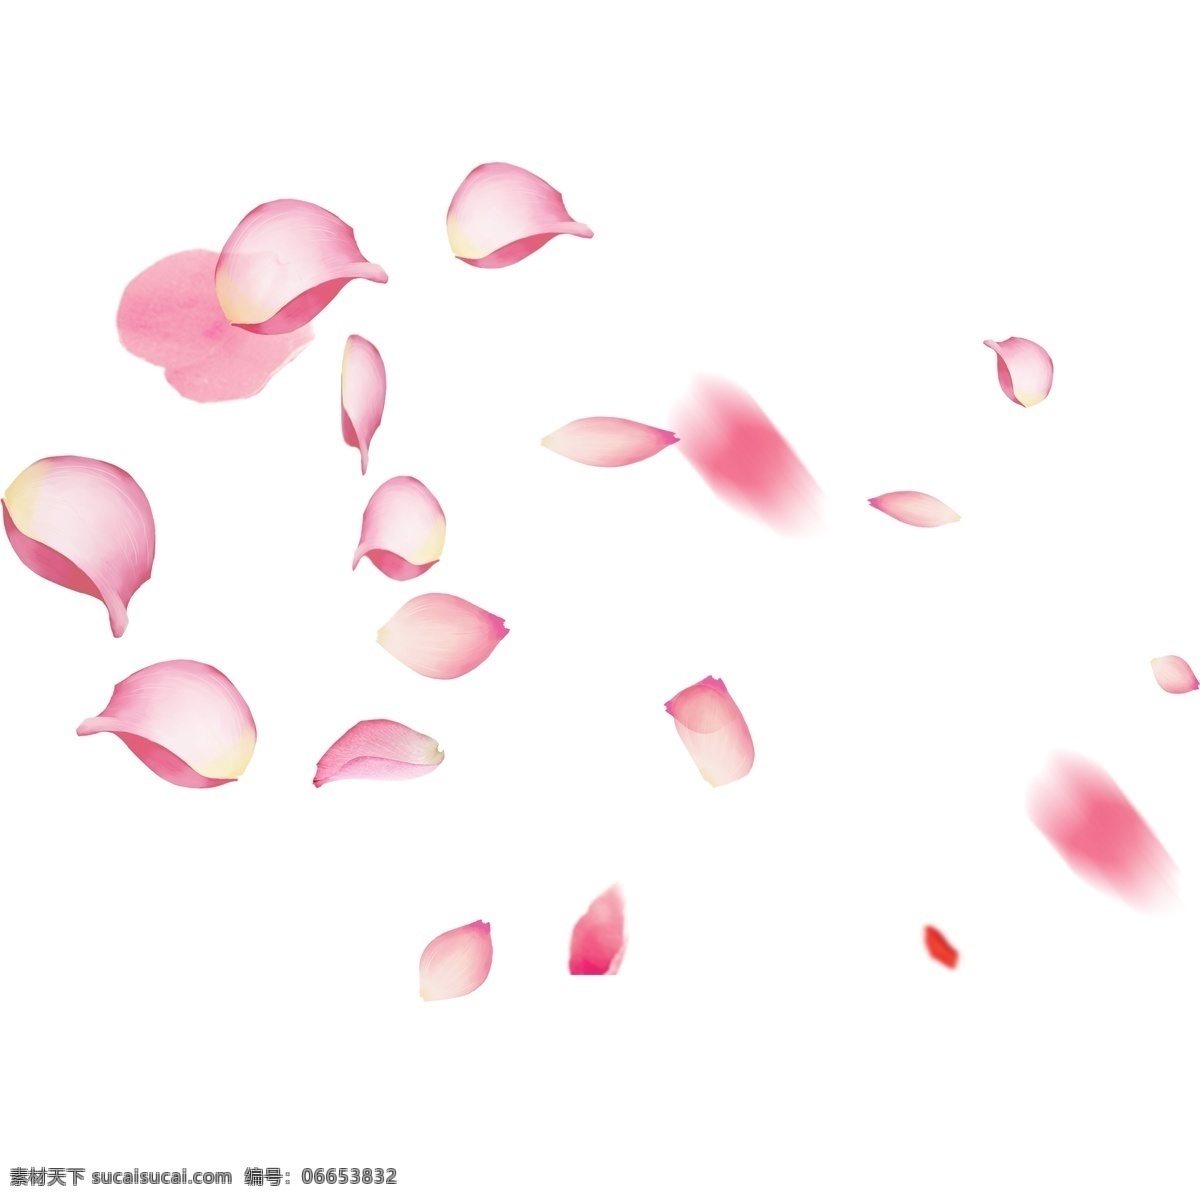 粉红色 花瓣 装饰 元素 粉红色花瓣 飘散 玫瑰 玫瑰花 爱情 情人 玫瑰花瓣 花朵 浪漫 红色玫瑰花瓣